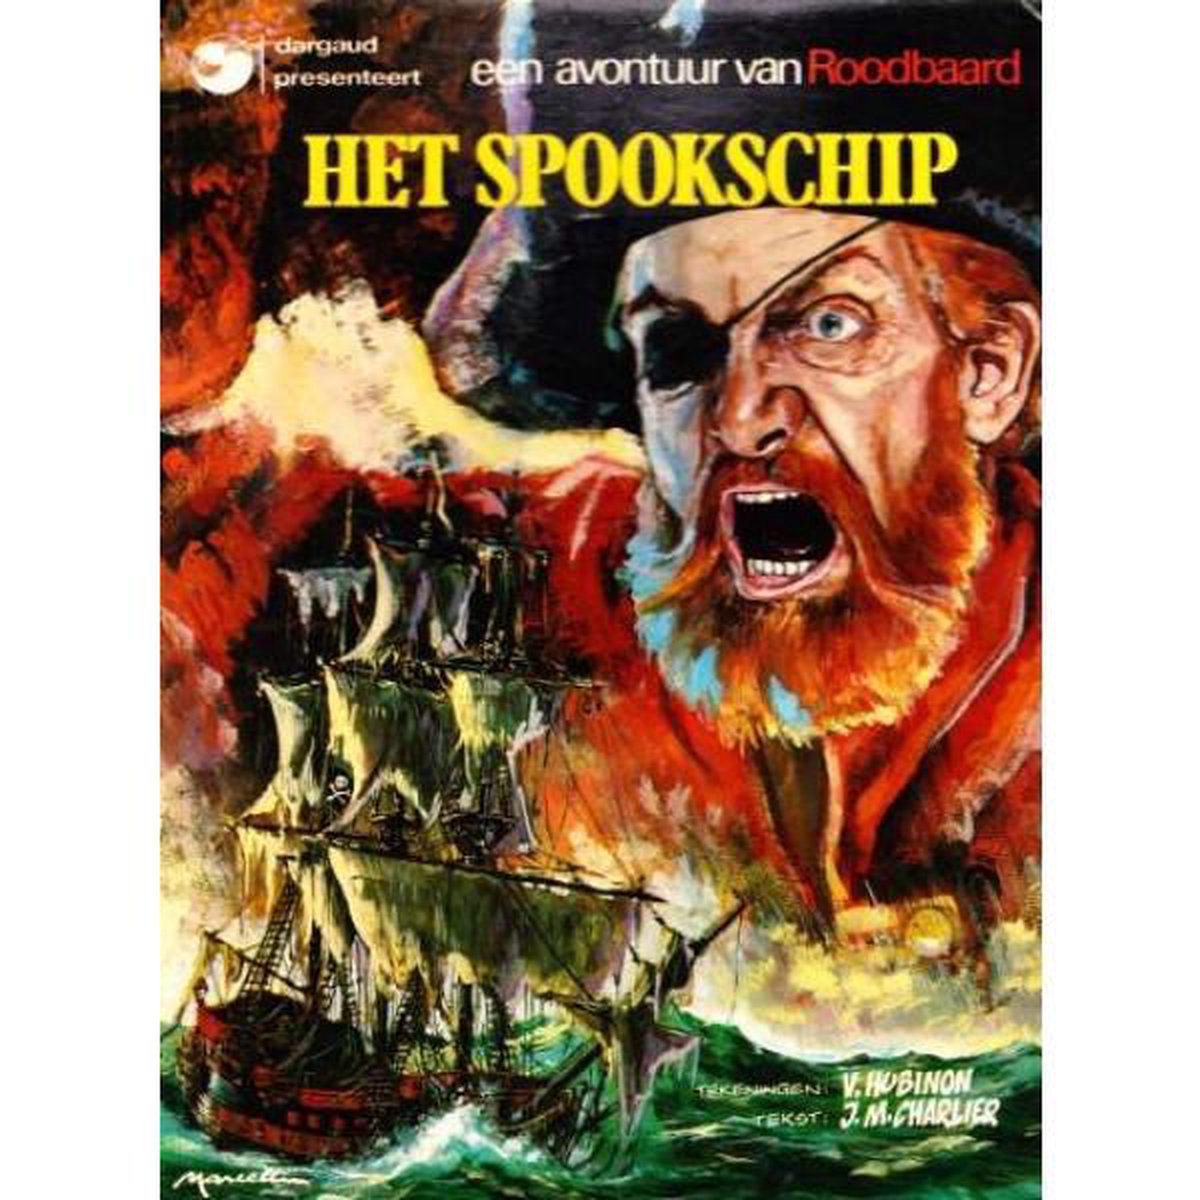 Een avontuur van Roodbaard - Het spookschip - J.M. Charlier & V. Hubinon